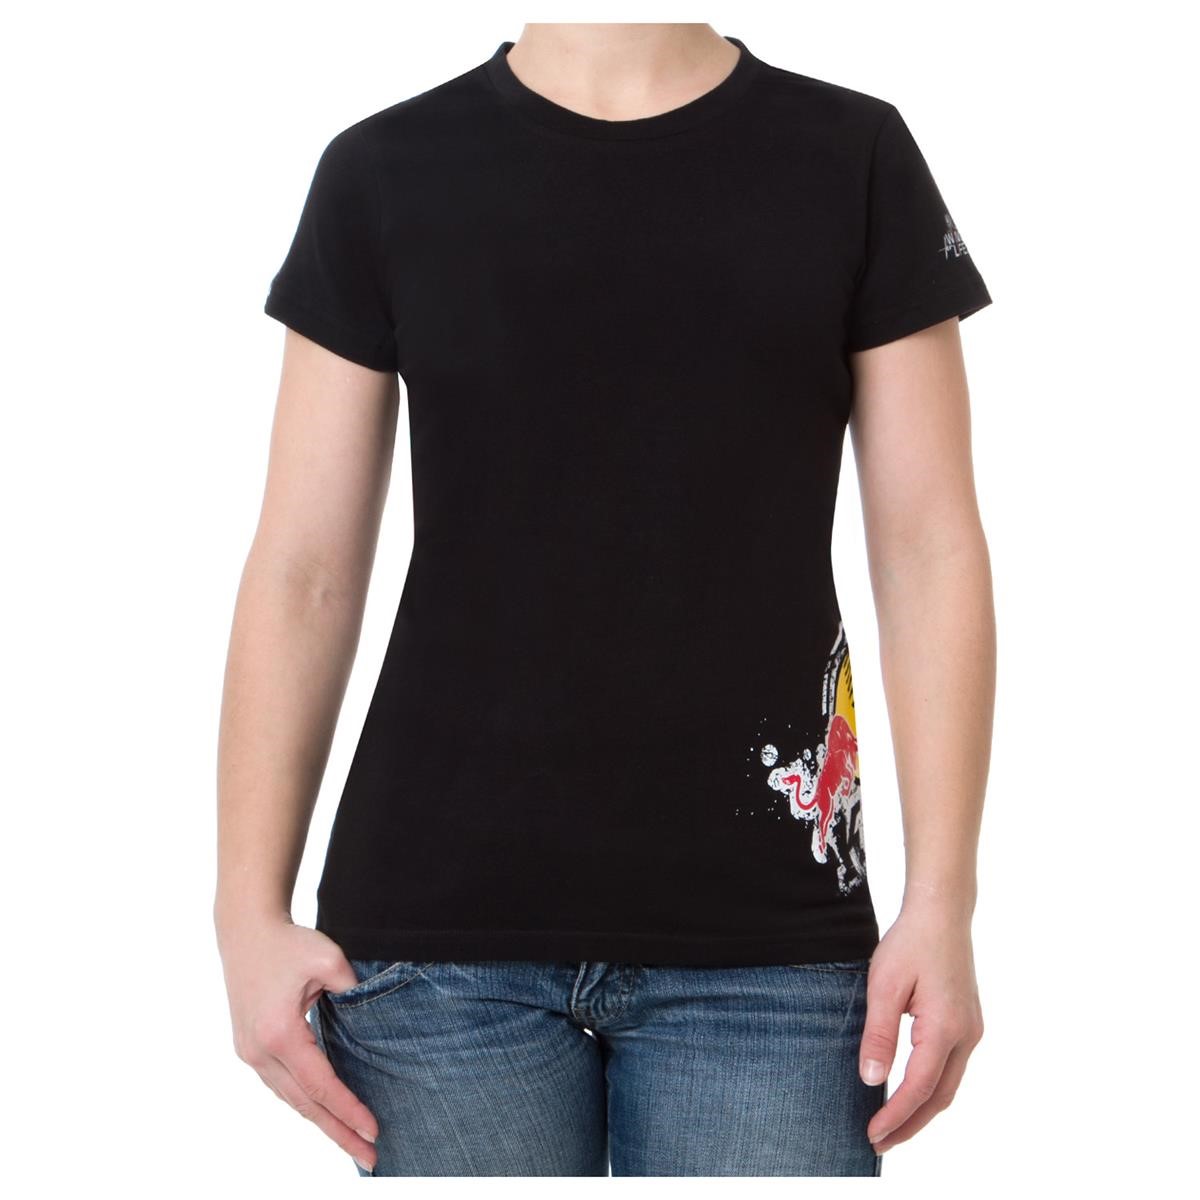 Kini Red Bull Femme T-Shirt Splattro Black